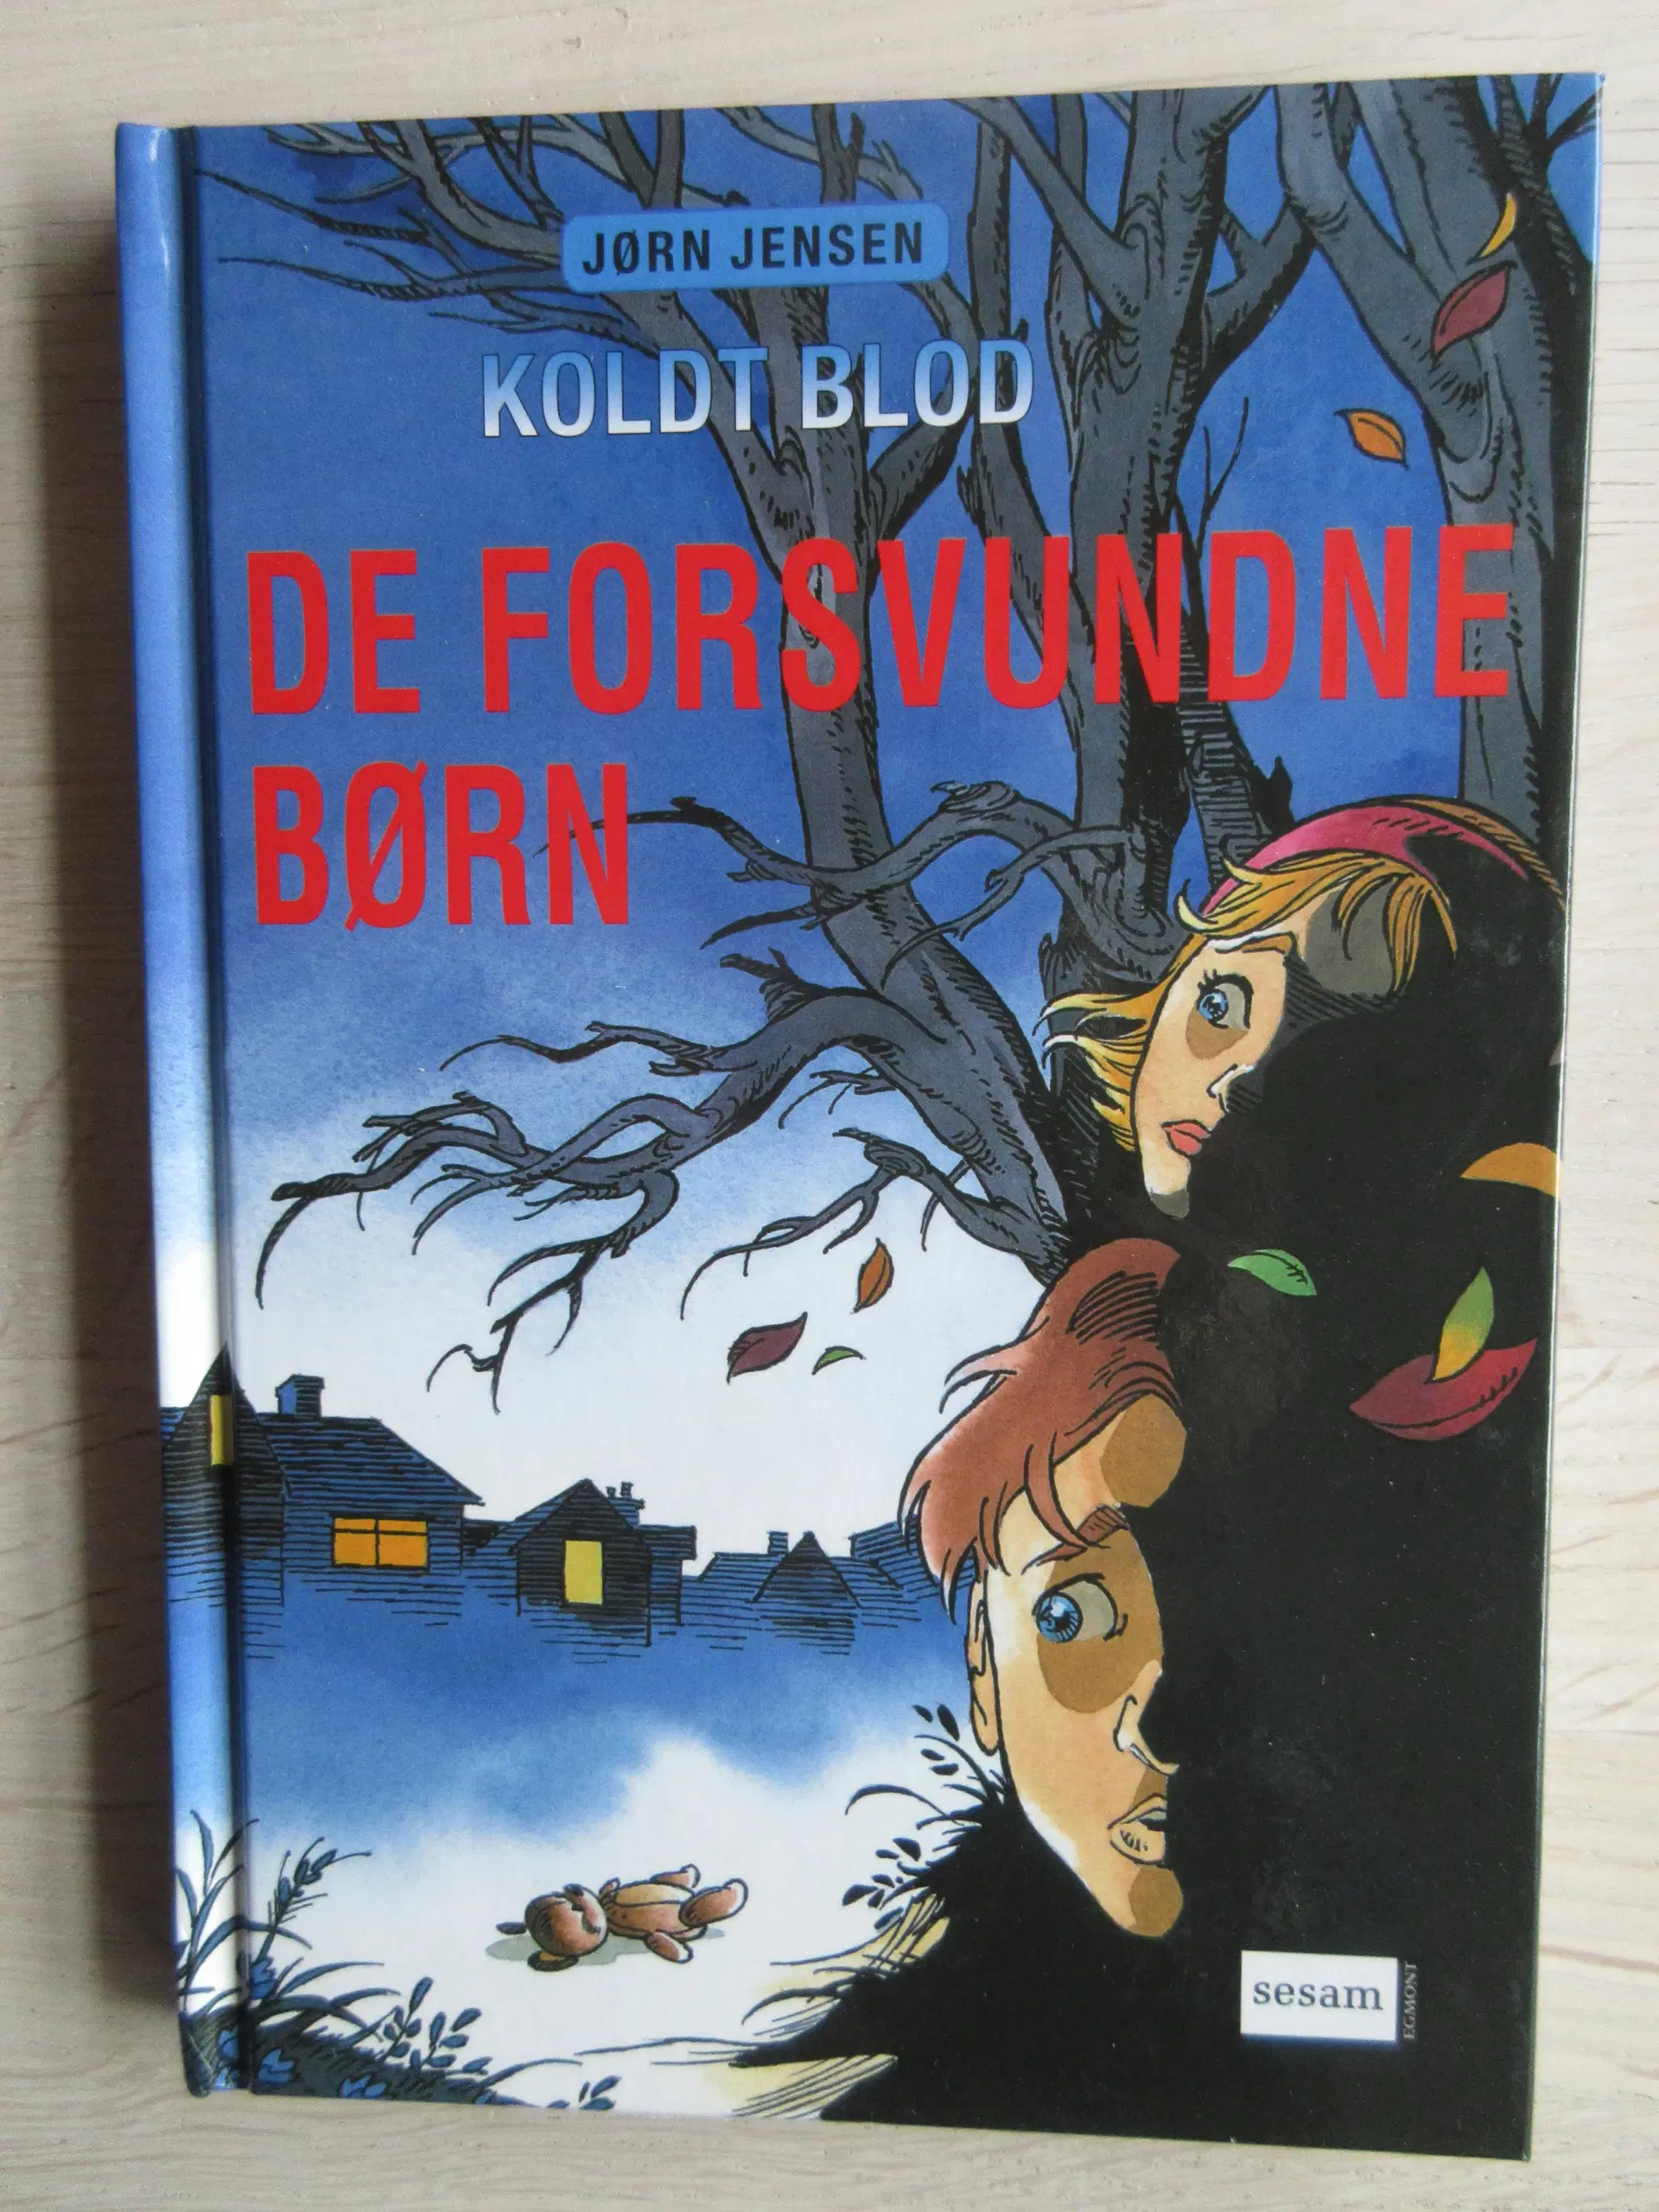 "Koldt blod" bøger - gysere for børn ;-)